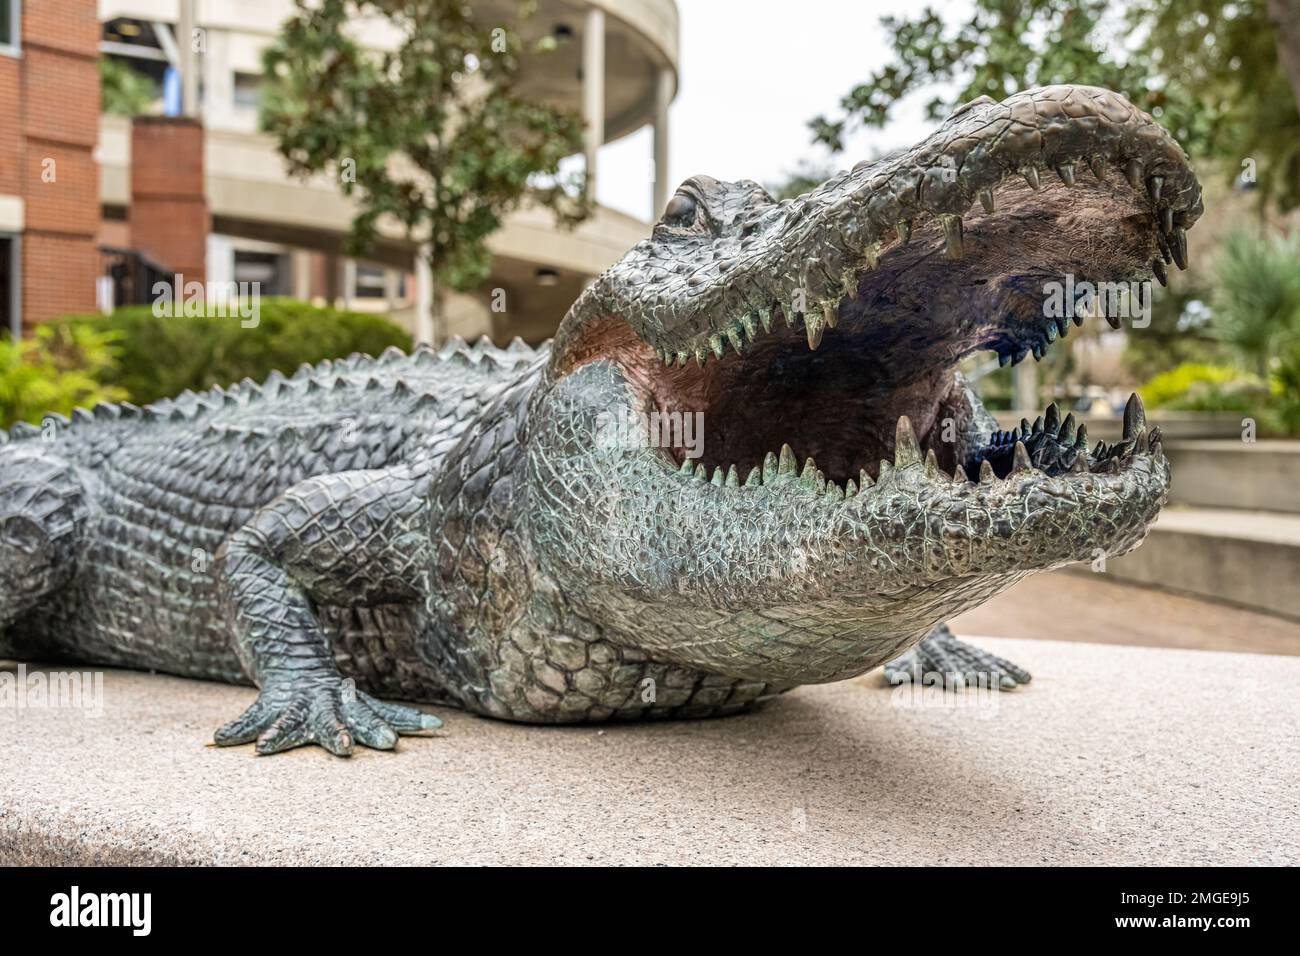 Statue de Gator de Floride à l'extérieur du stade Ben Hill Griffin (également connu sous le nom de « The Swamp ») sur le campus de l'Université de Floride à Gainesville, FL. (ÉTATS-UNIS) Banque D'Images